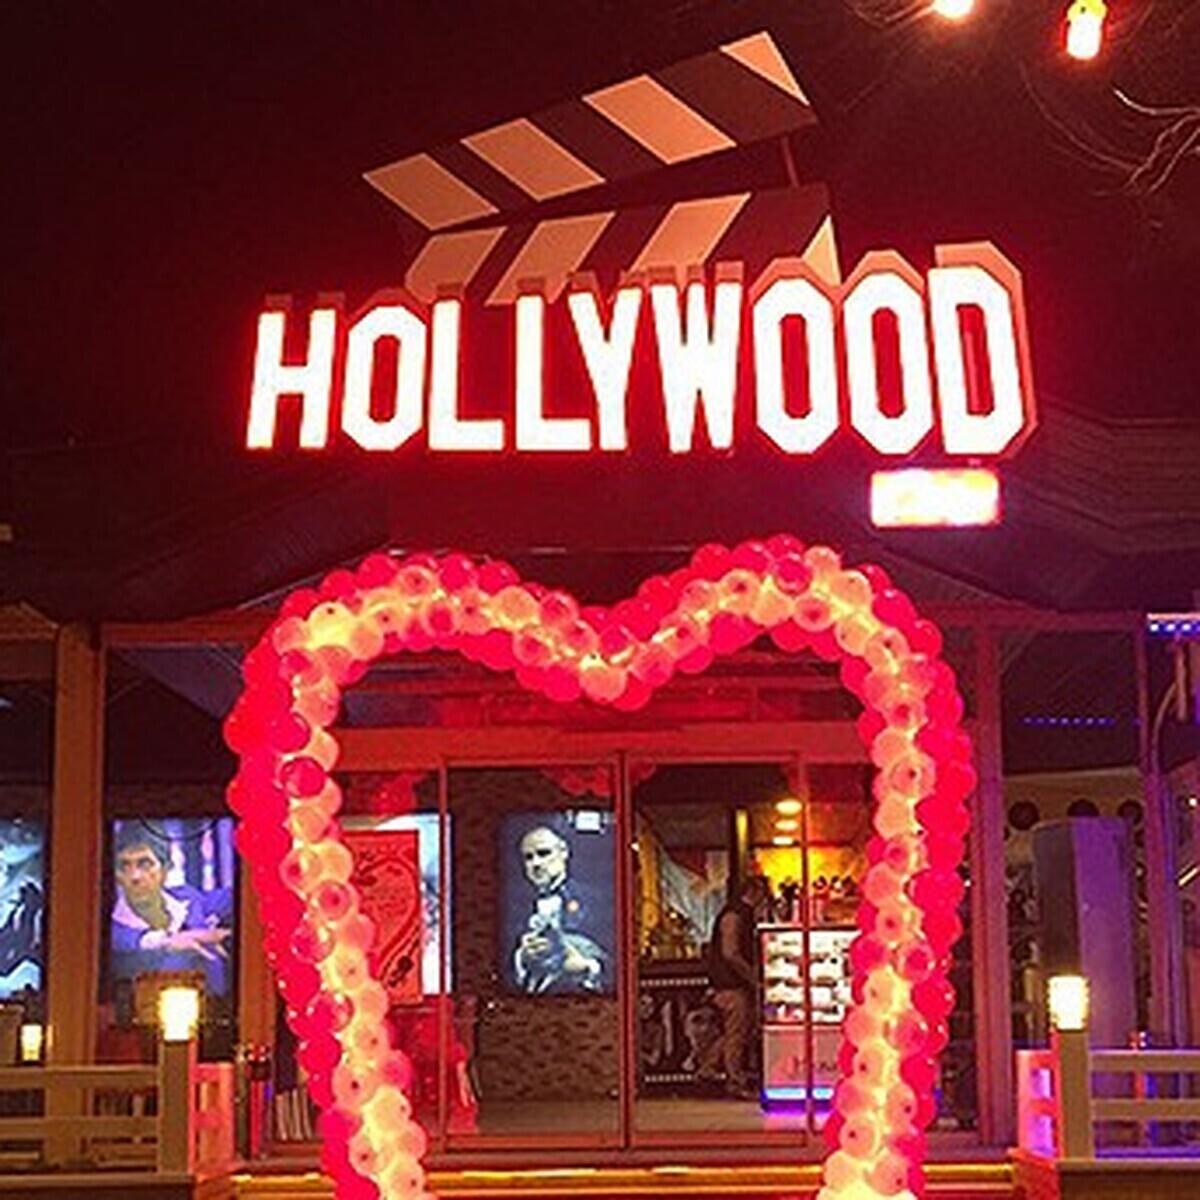 Boğaz Manzaralı Cafe Hollywoodcity Lounge’dan Sevgililer Gününe Özel Romantik Akşam Yemeği